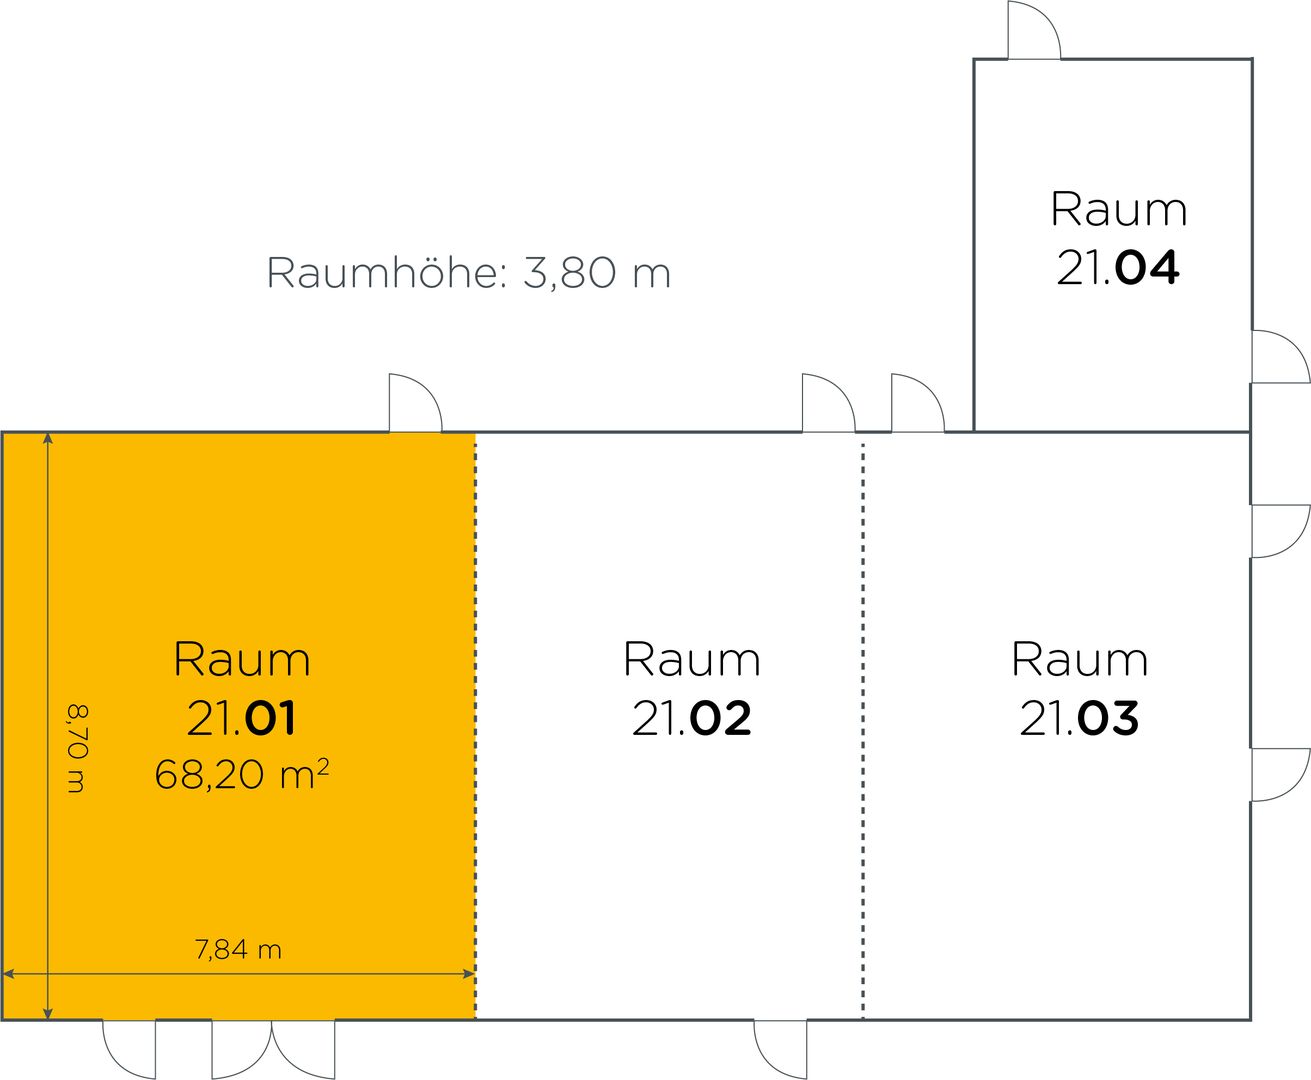 Lageplan vom Seminarraum 21 01 mit 68,20 m² und Raumhöhe 3,80 meter